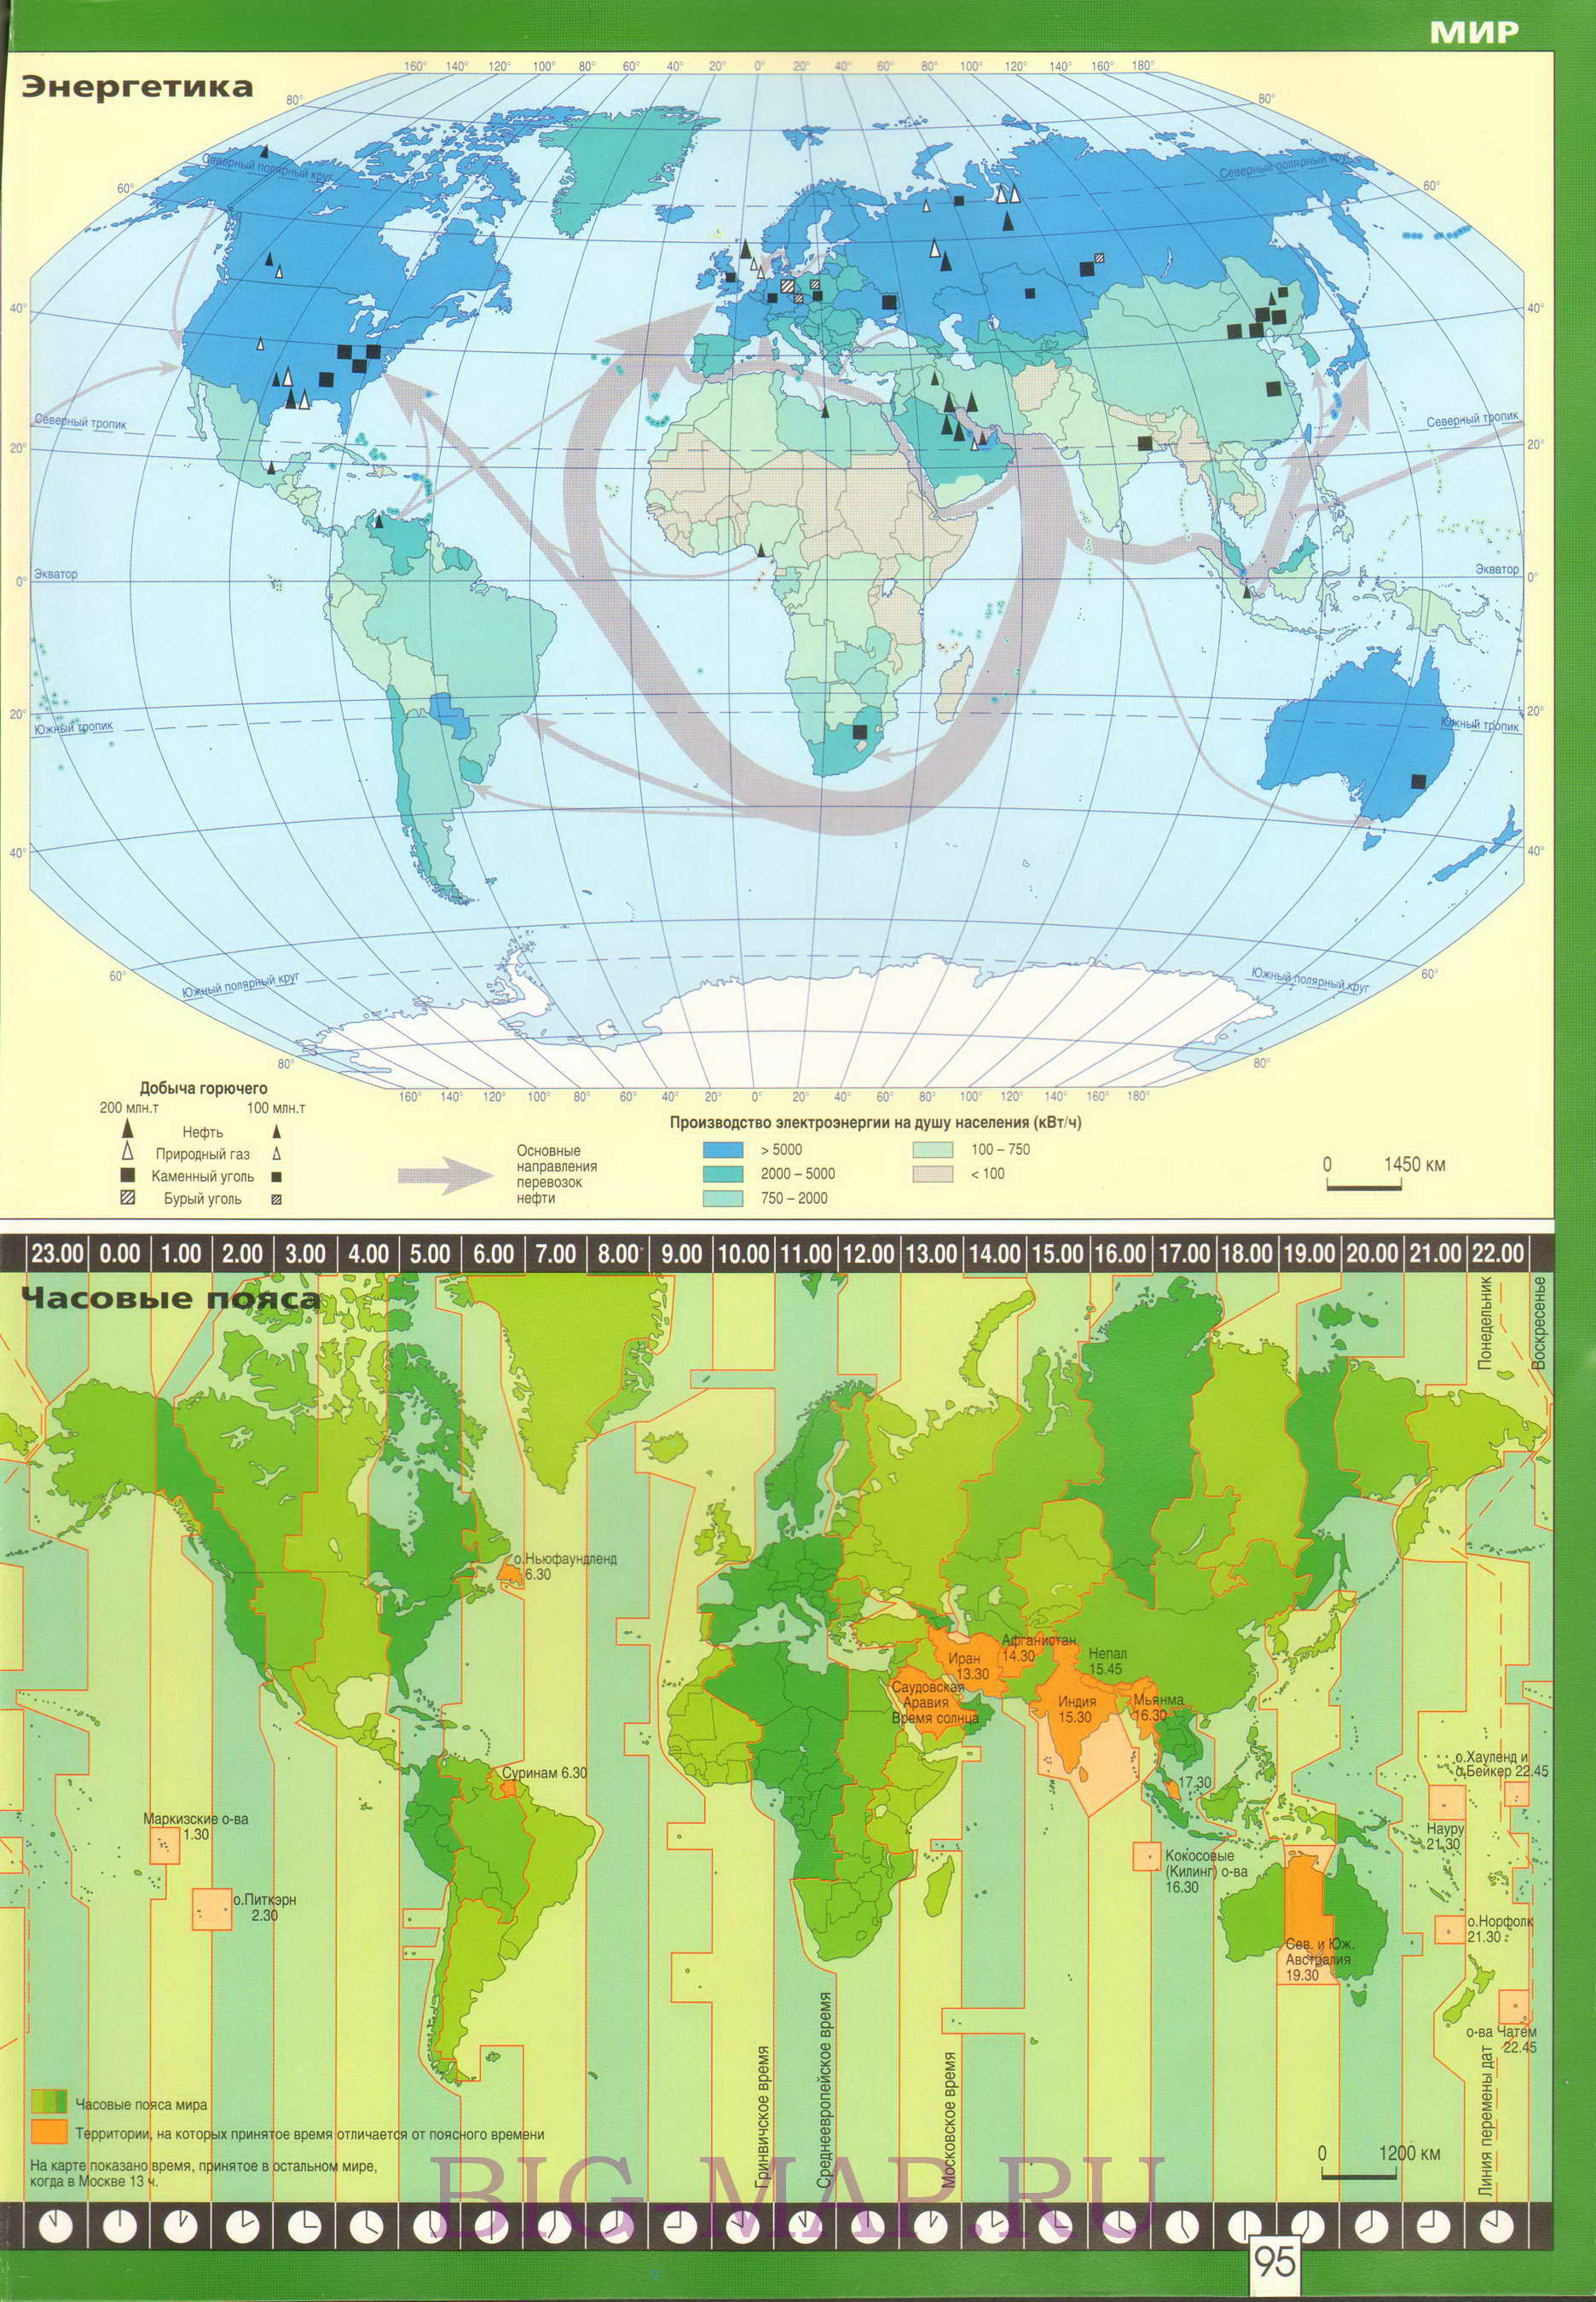 Карта энергетики мира. Карта мировой добычи горючего и выработки электроэнергии на душу населения. Карта направлений перевозки нефти, A0 - 